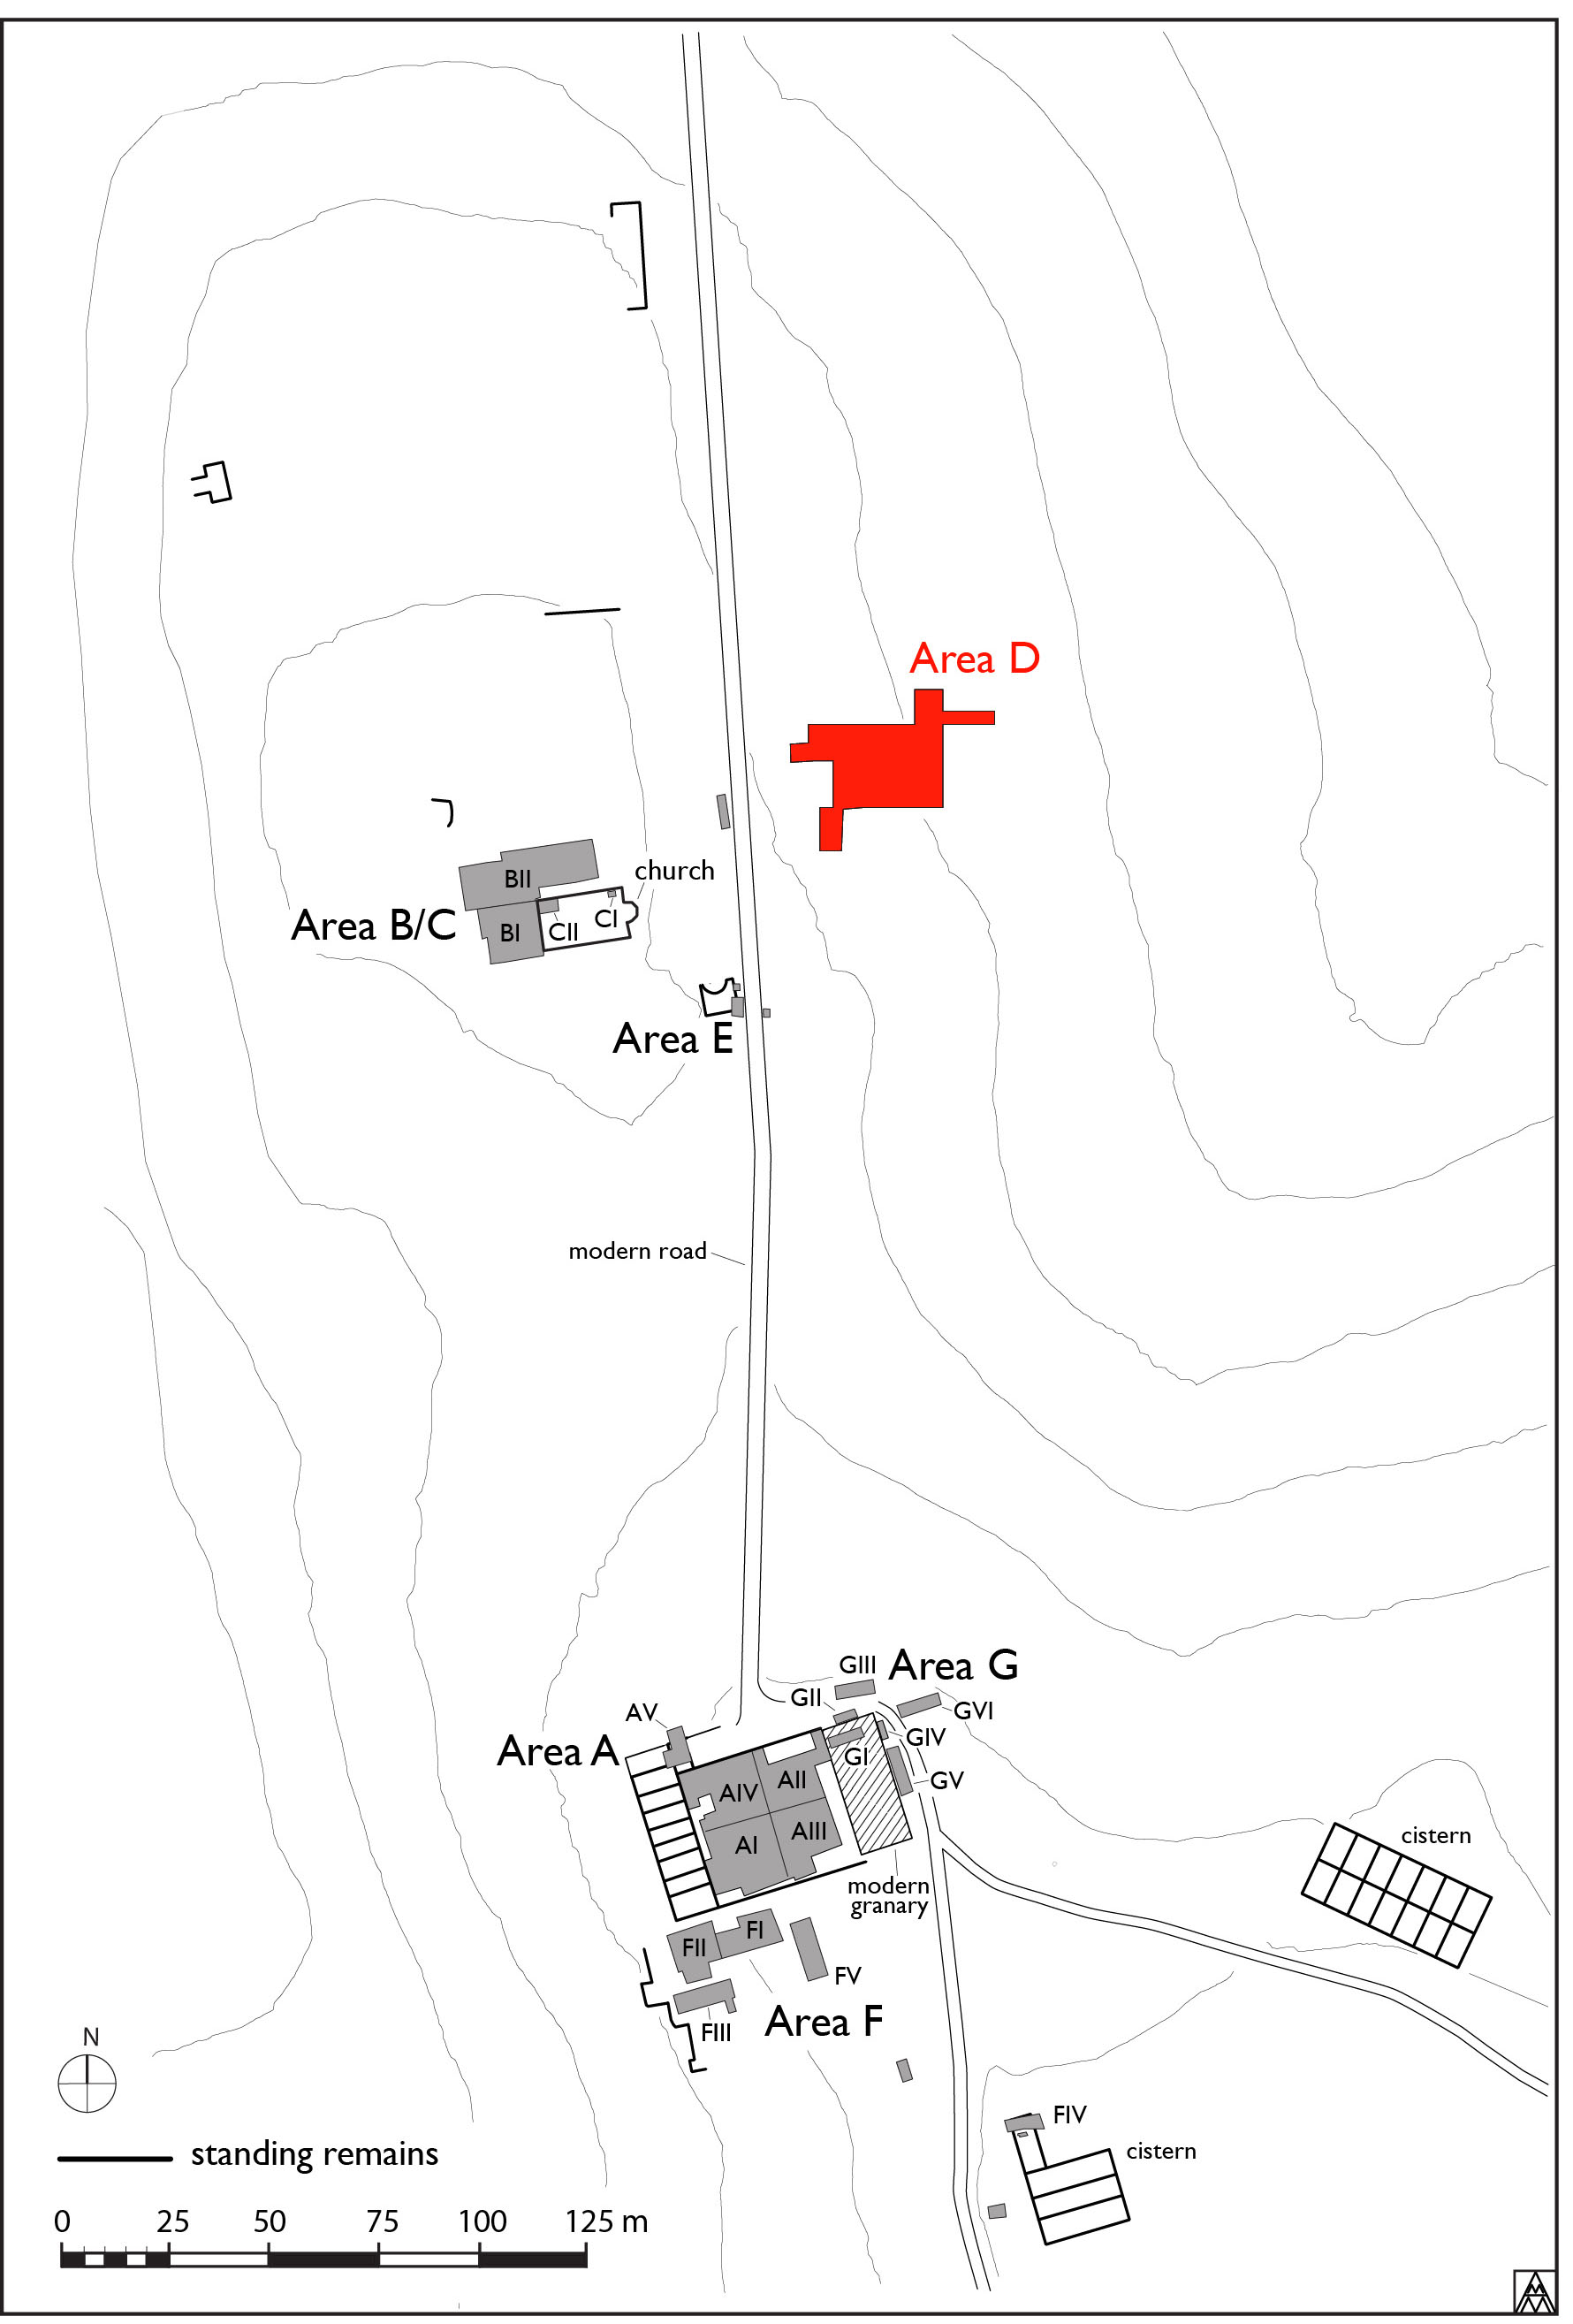 Figura 1. Pianta generale del sito con la localizzazione dell’Area D (Margaret Andrews).